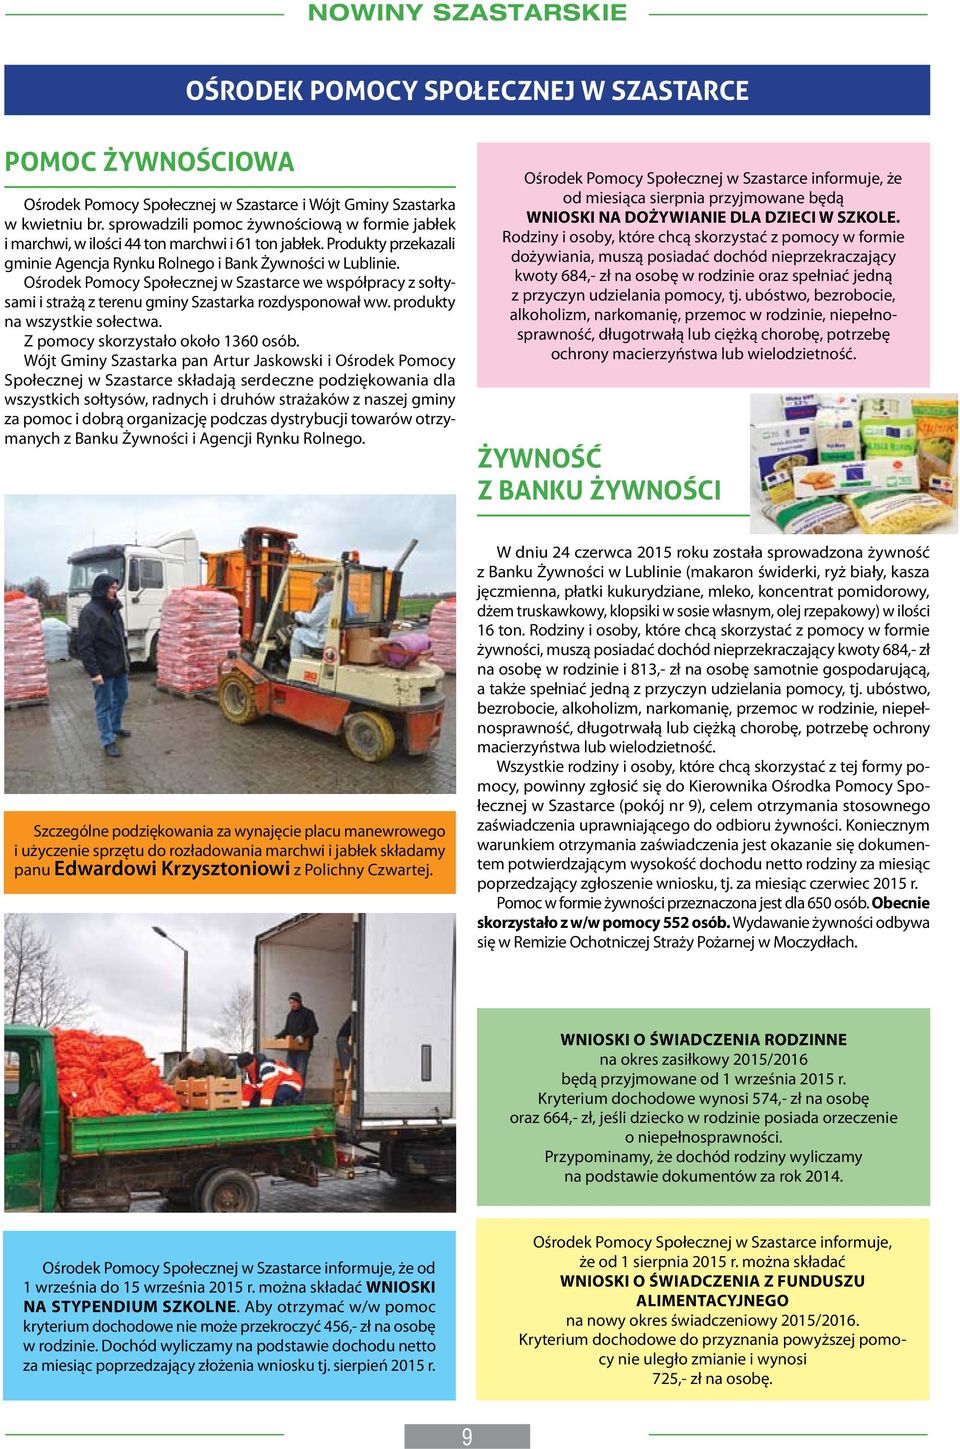 Ośrodek Pomocy Społecznej w Szastarce we współpracy z sołtysami i strażą z terenu gminy Szastarka rozdysponował ww. produkty na wszystkie sołectwa. Z pomocy skorzystało około 1360 osób.